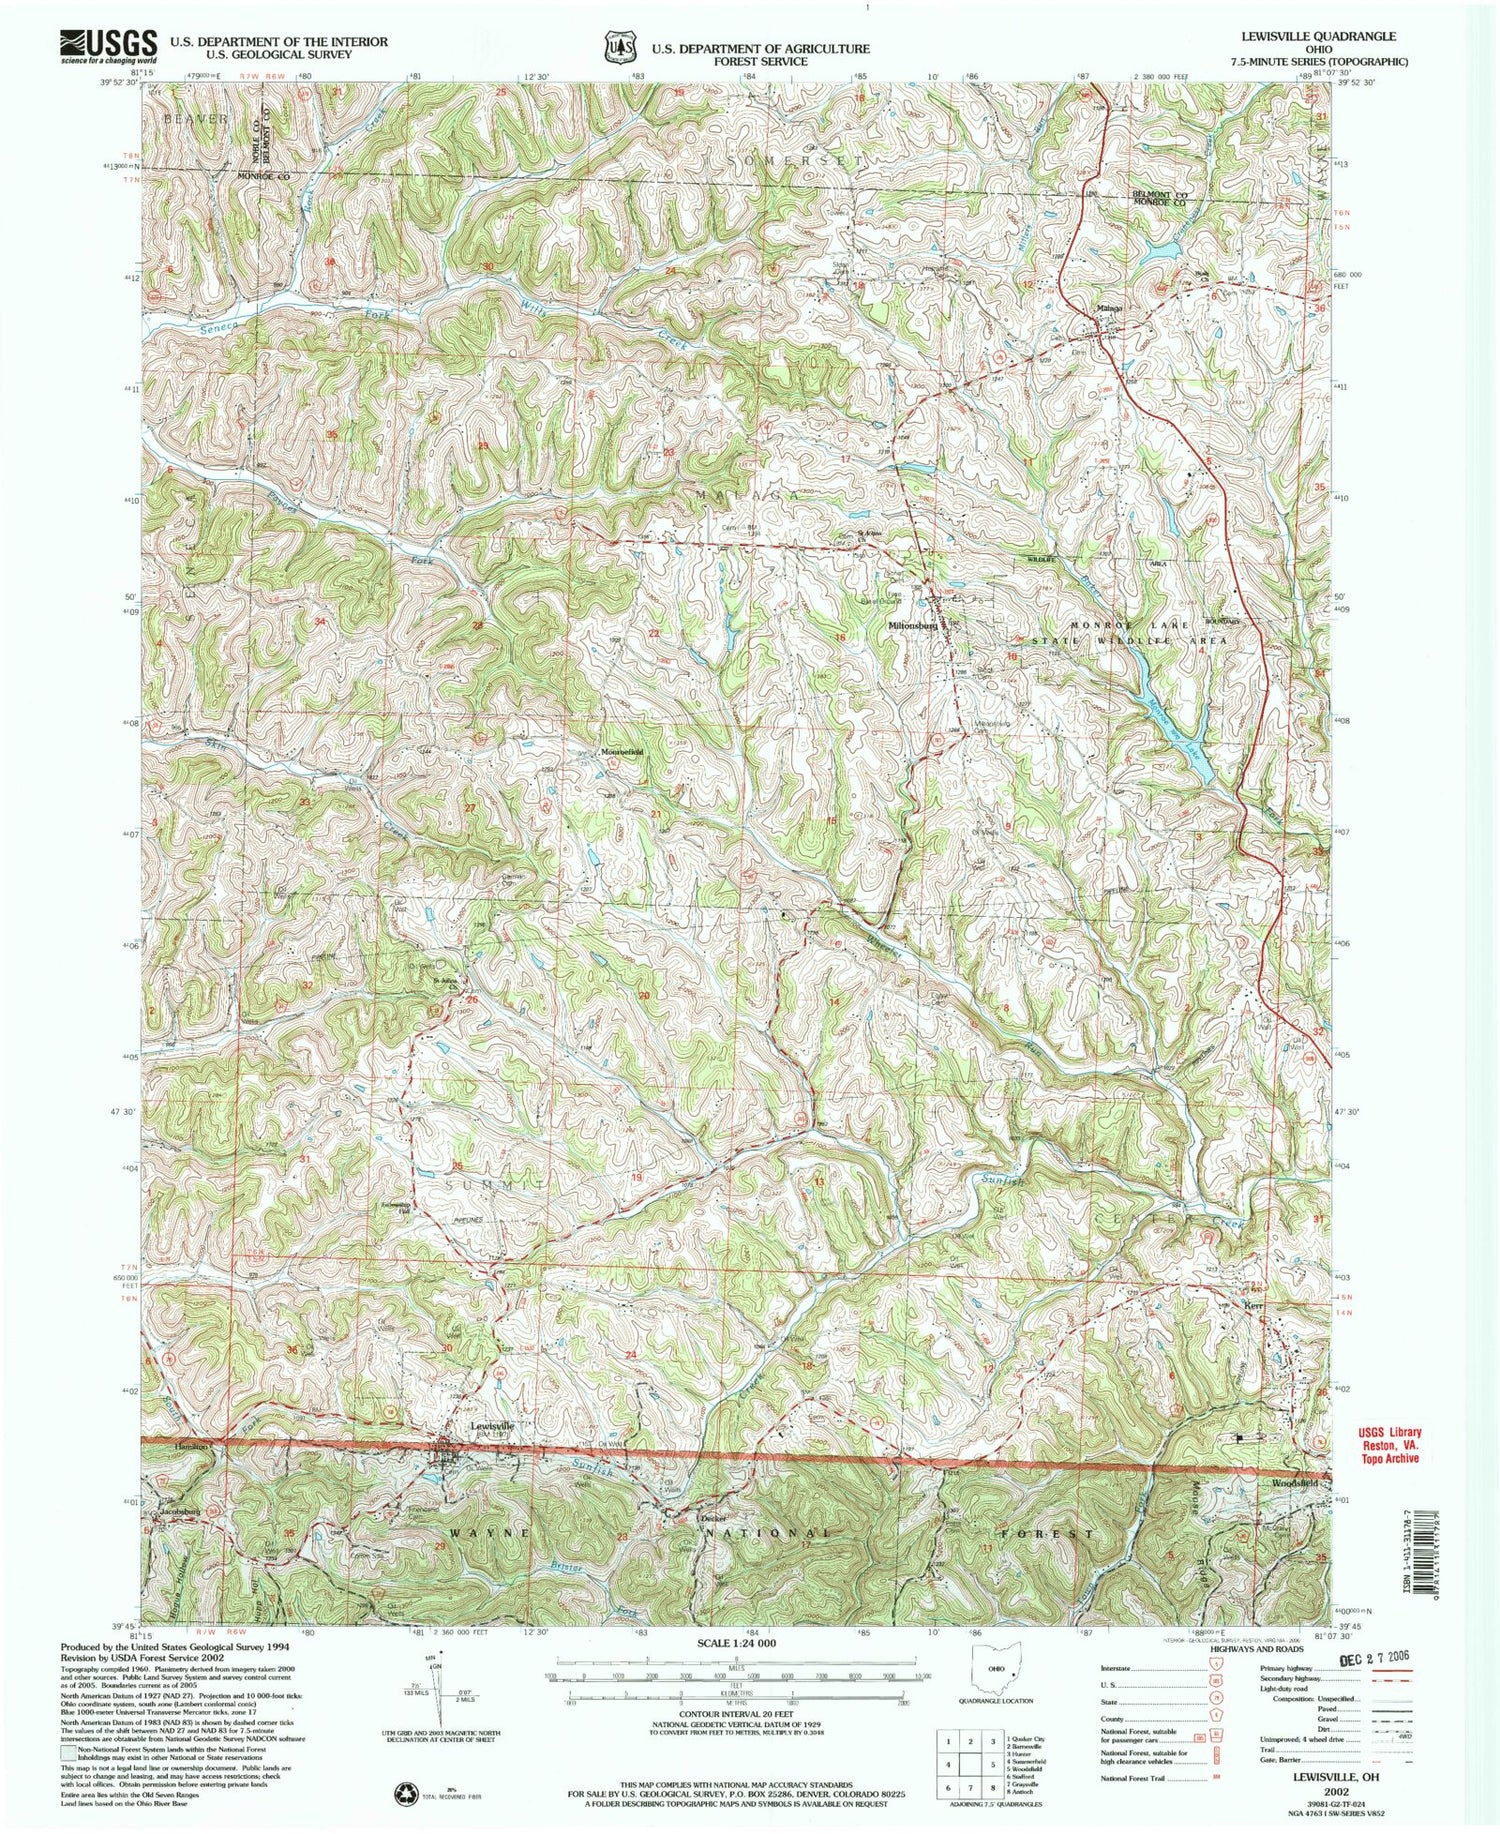 Classic USGS Lewisville Ohio 7.5'x7.5' Topo Map Image